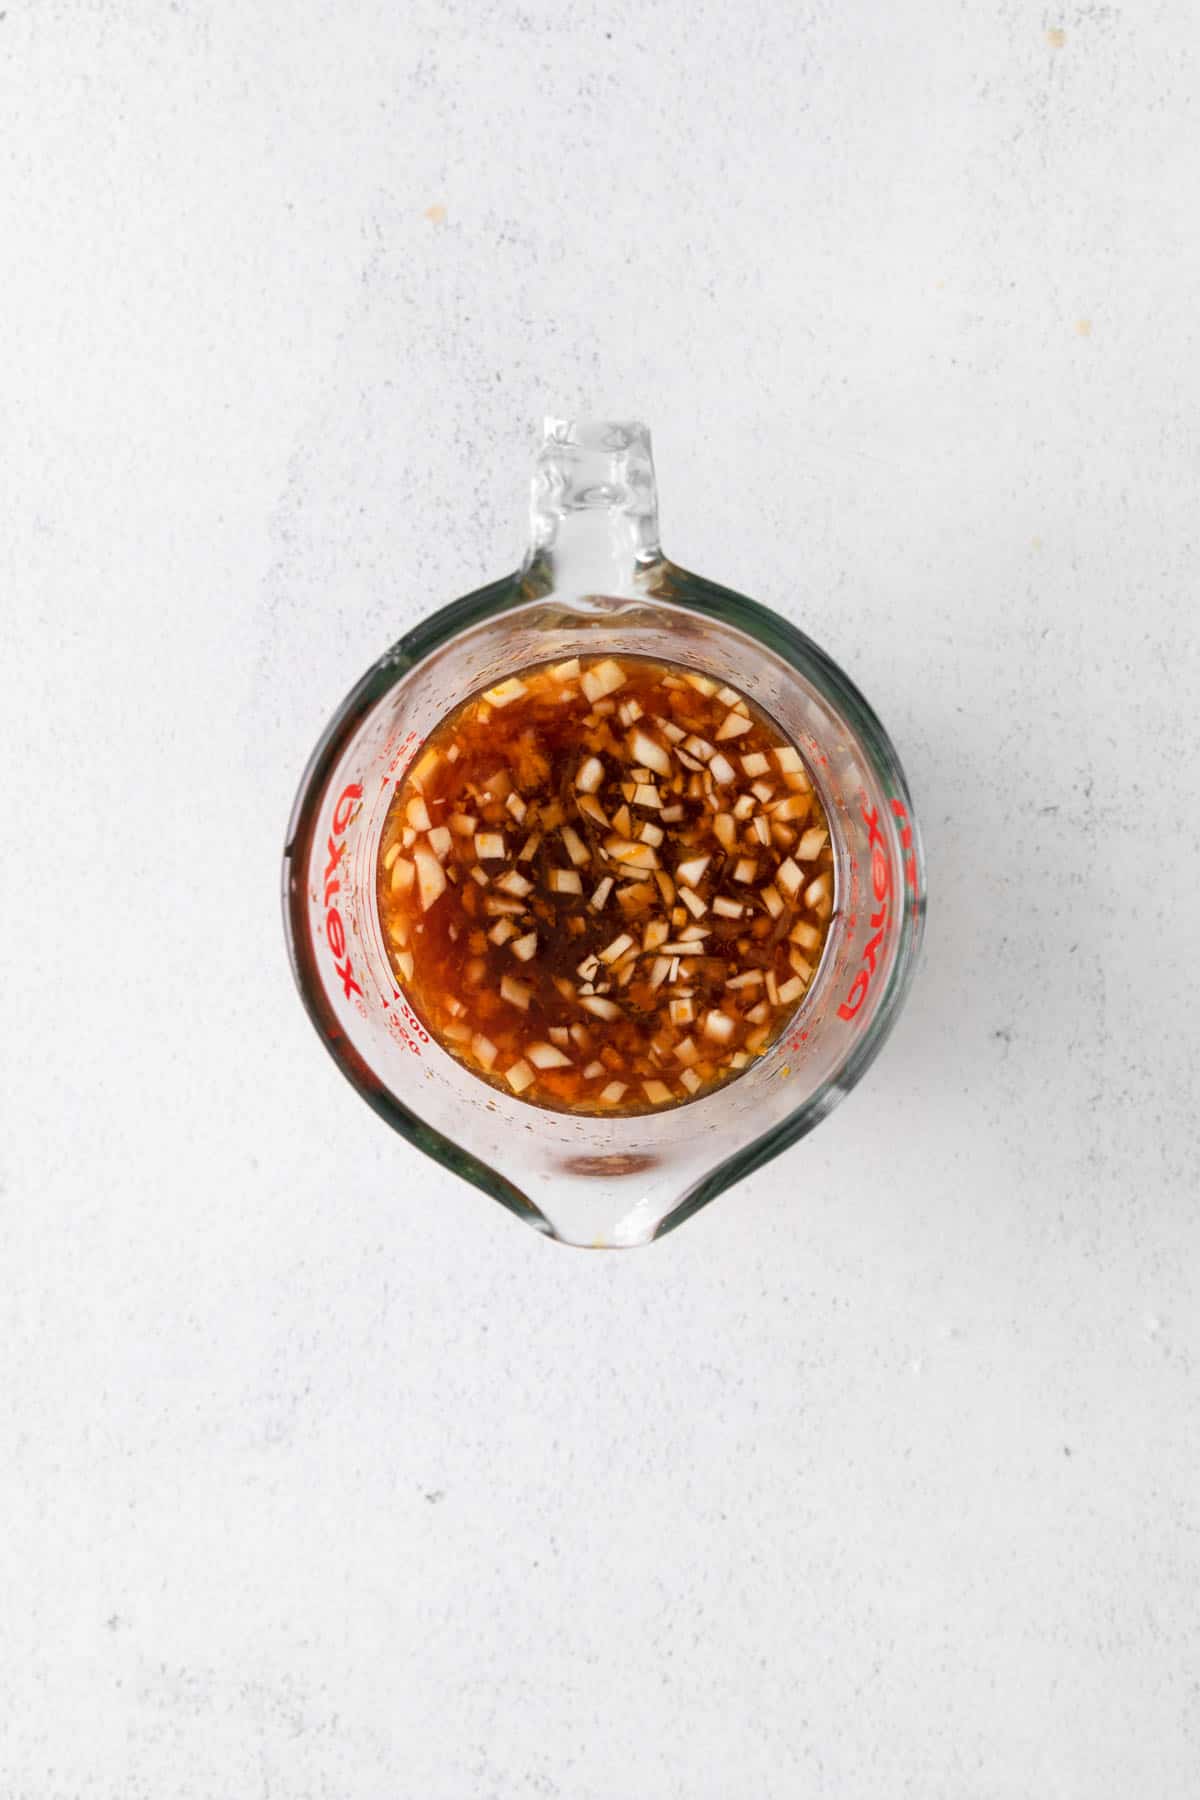 Orange chicken sauce in a glass bowl.